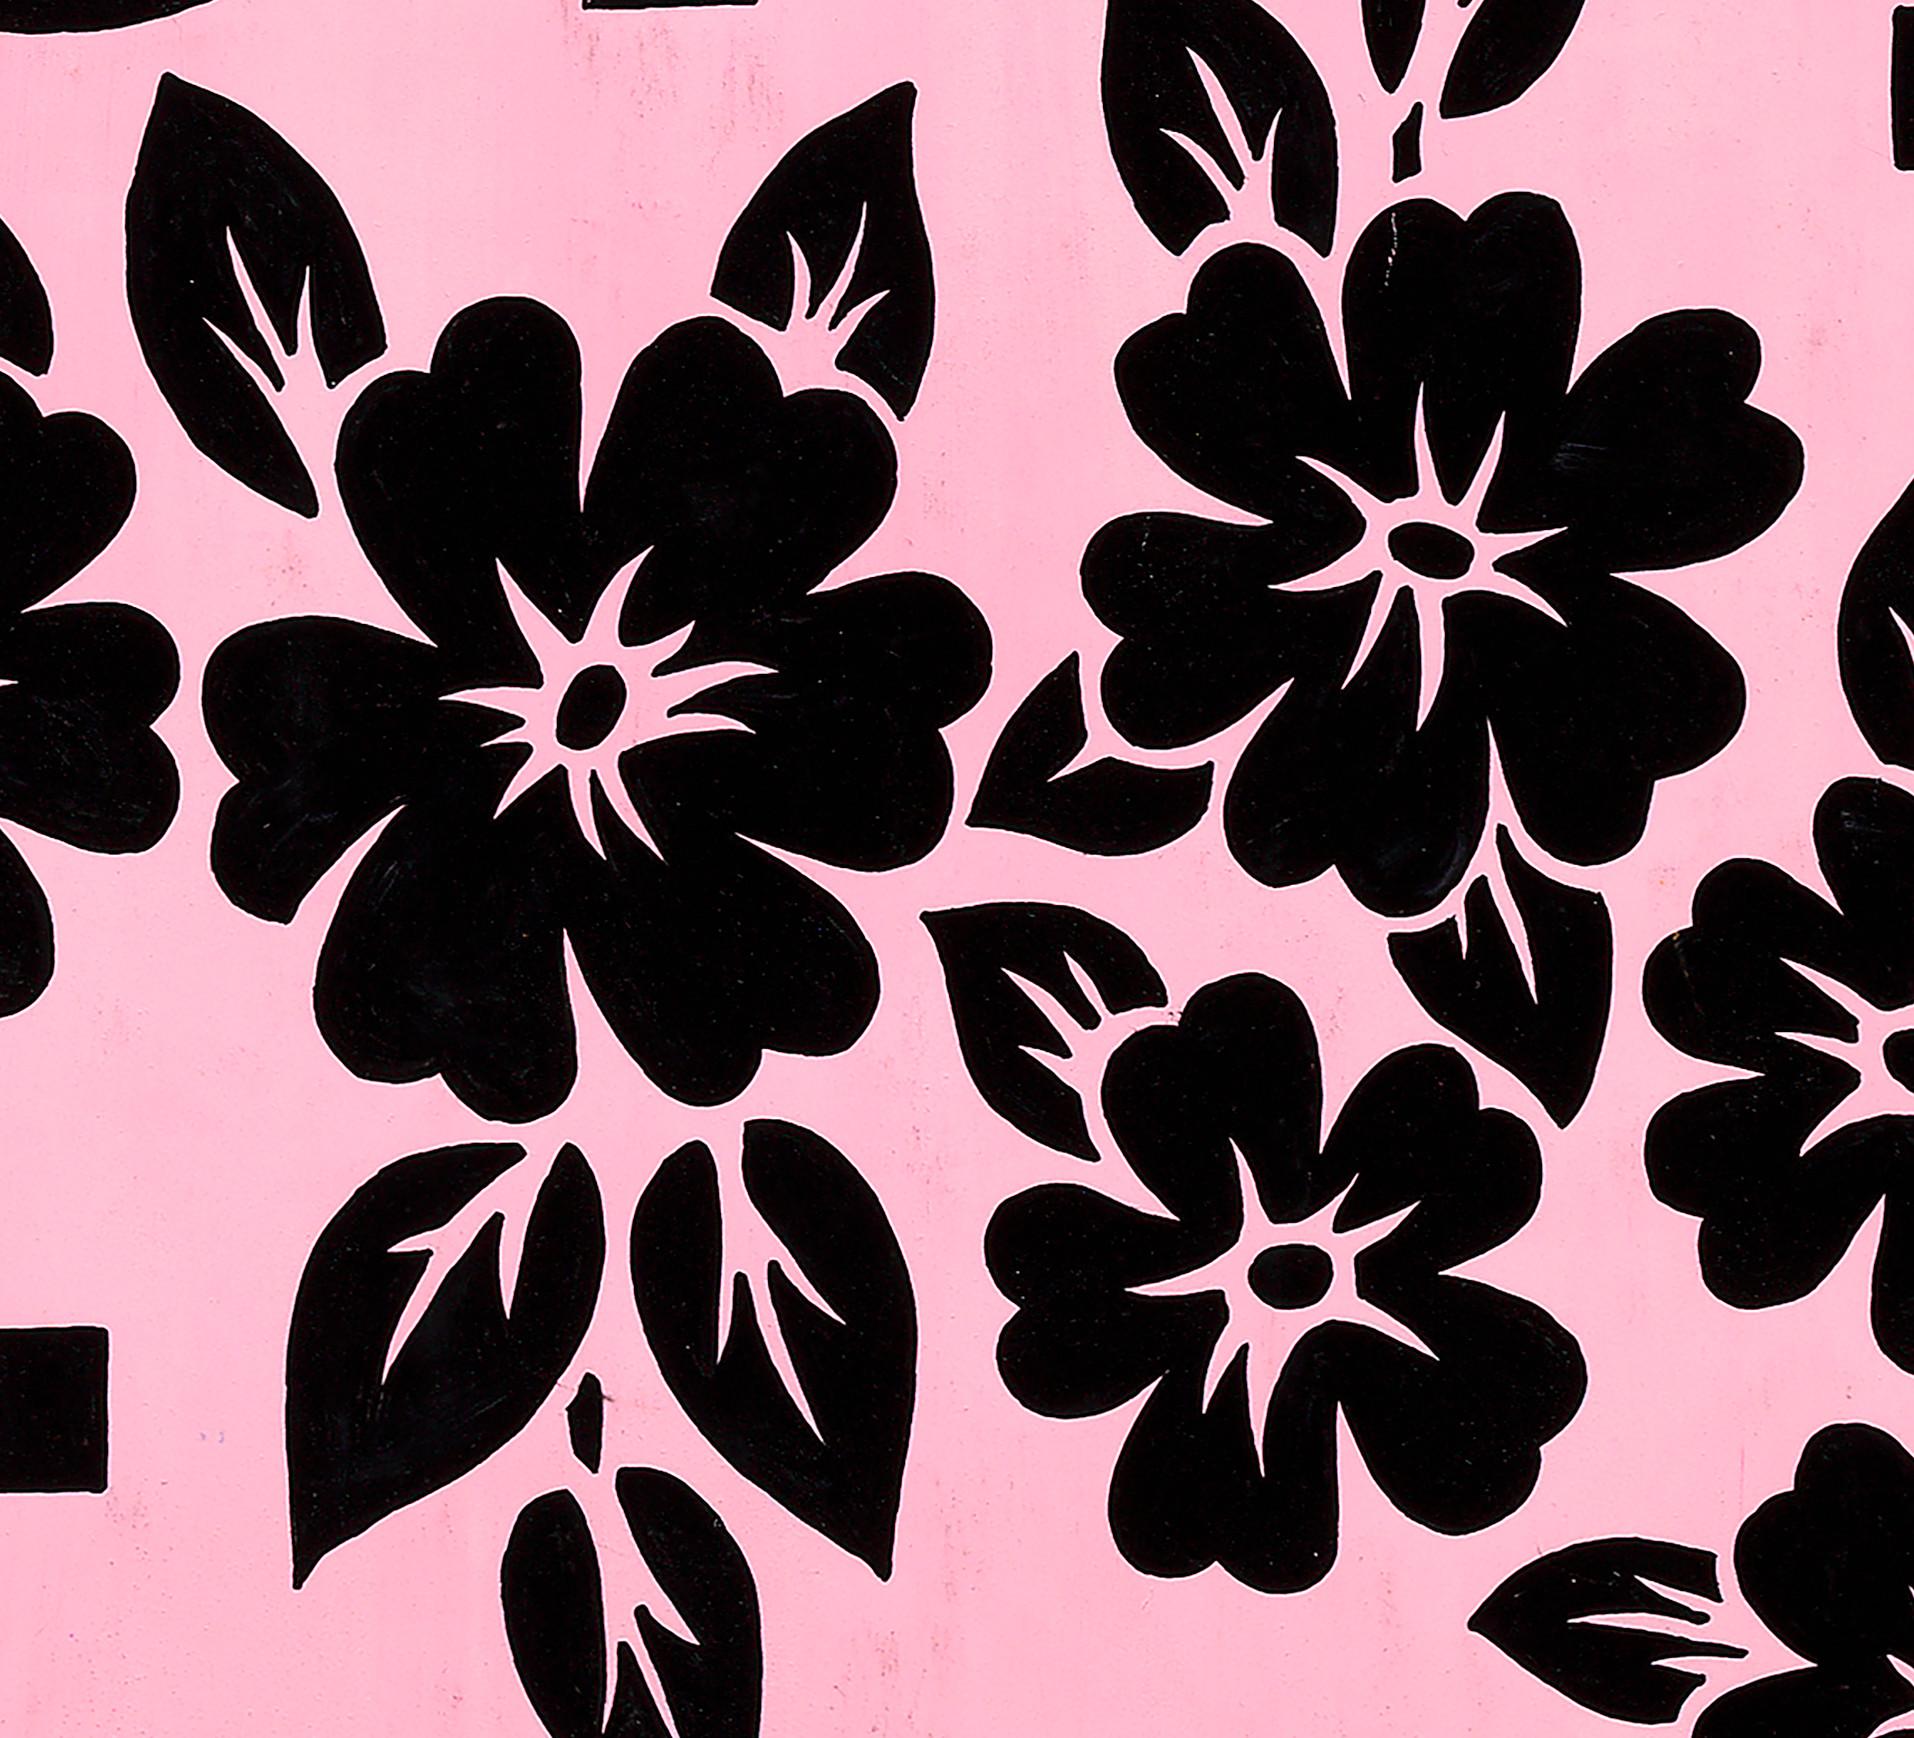 Conception textile originale des années 70 peinte à la main à la gouache, couleur rose et noire sur papier - Art de Unknown